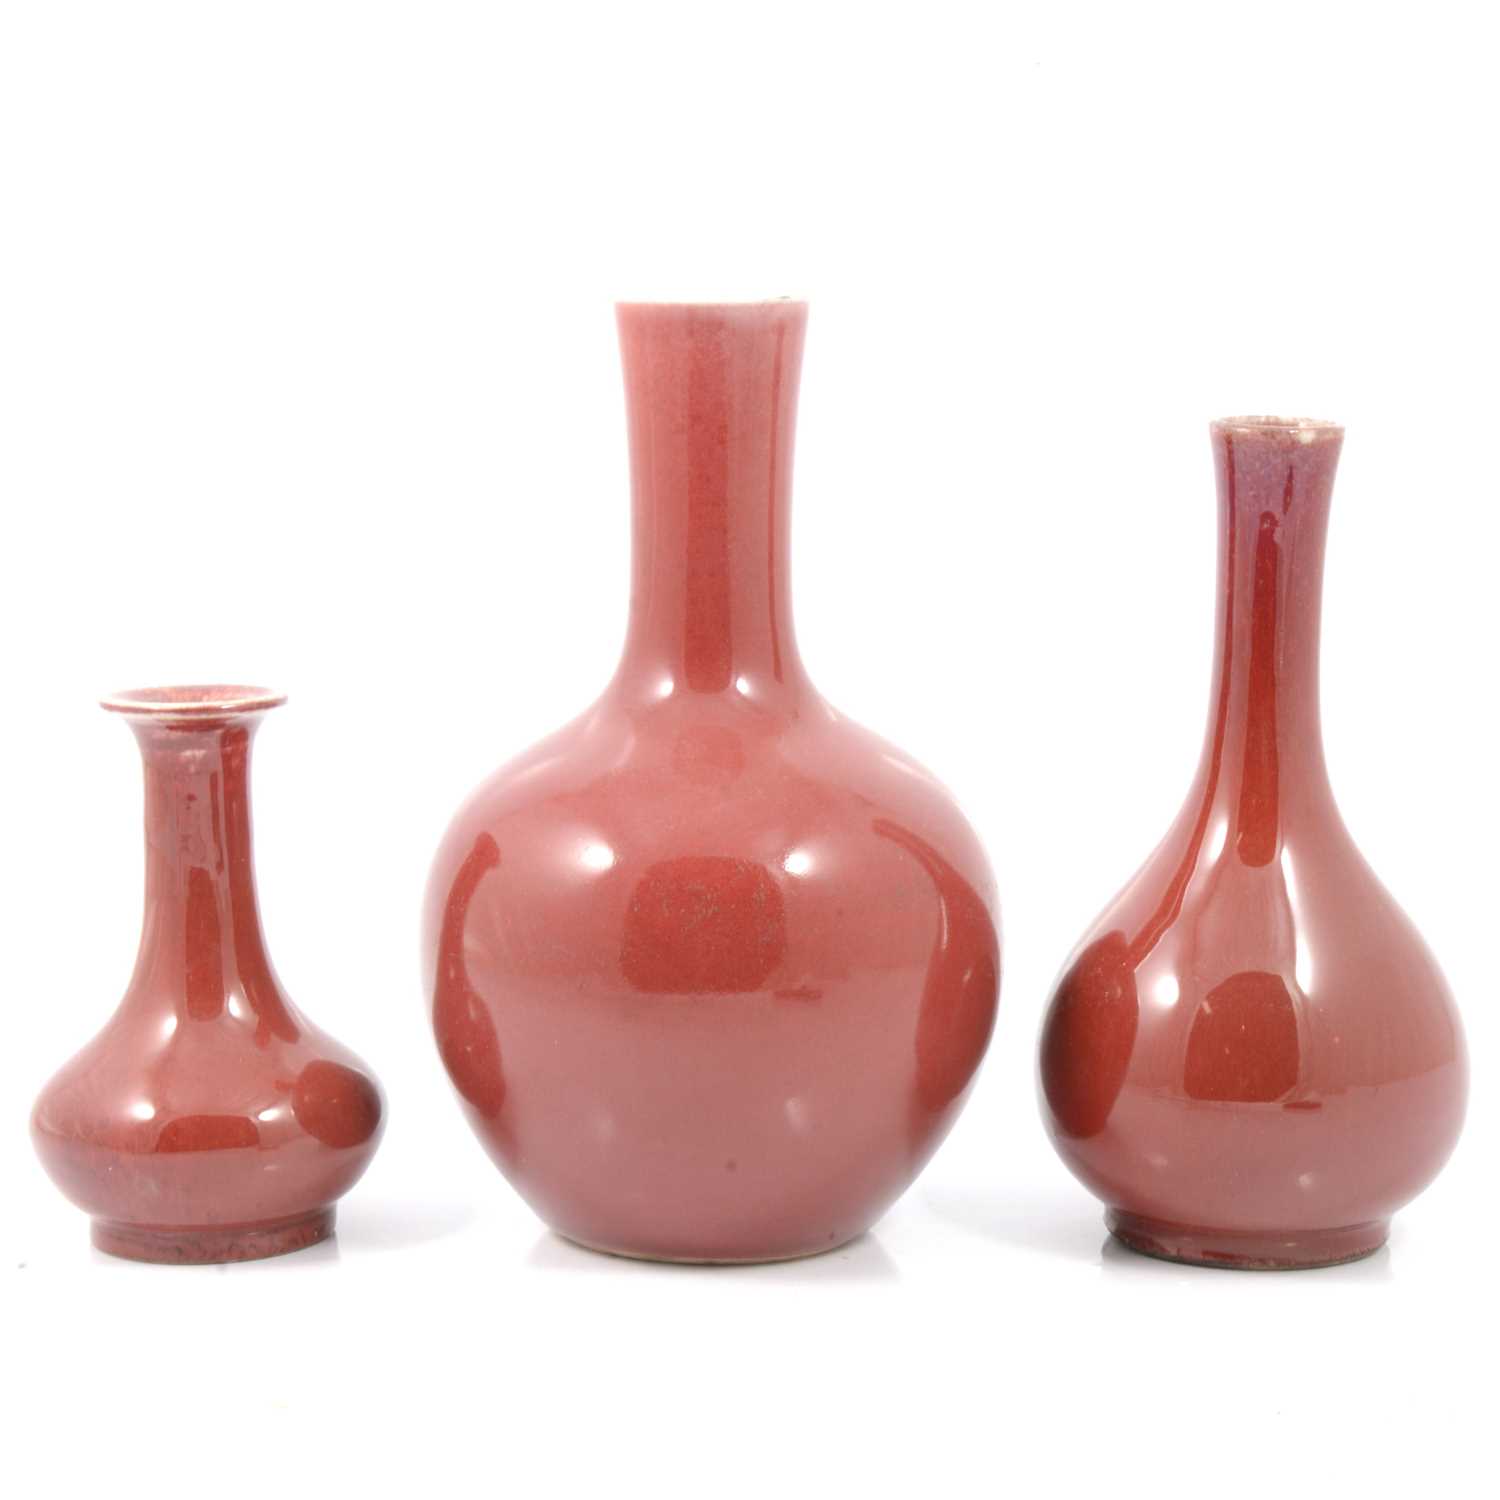 85 - Three Chinese bottle vases,